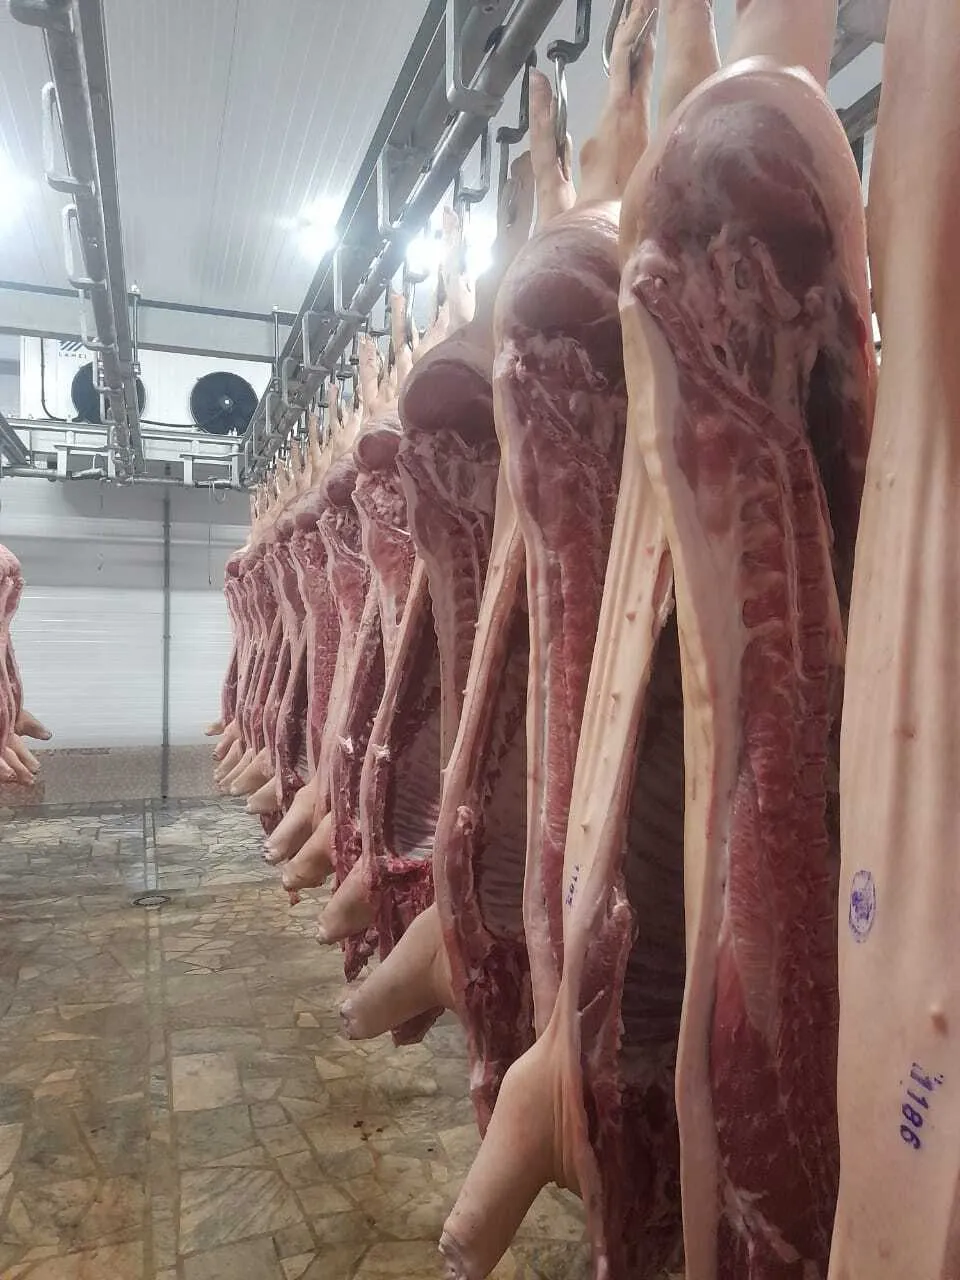 ищу надежного поставщика мяса свинины в Симферополе и республике Крым